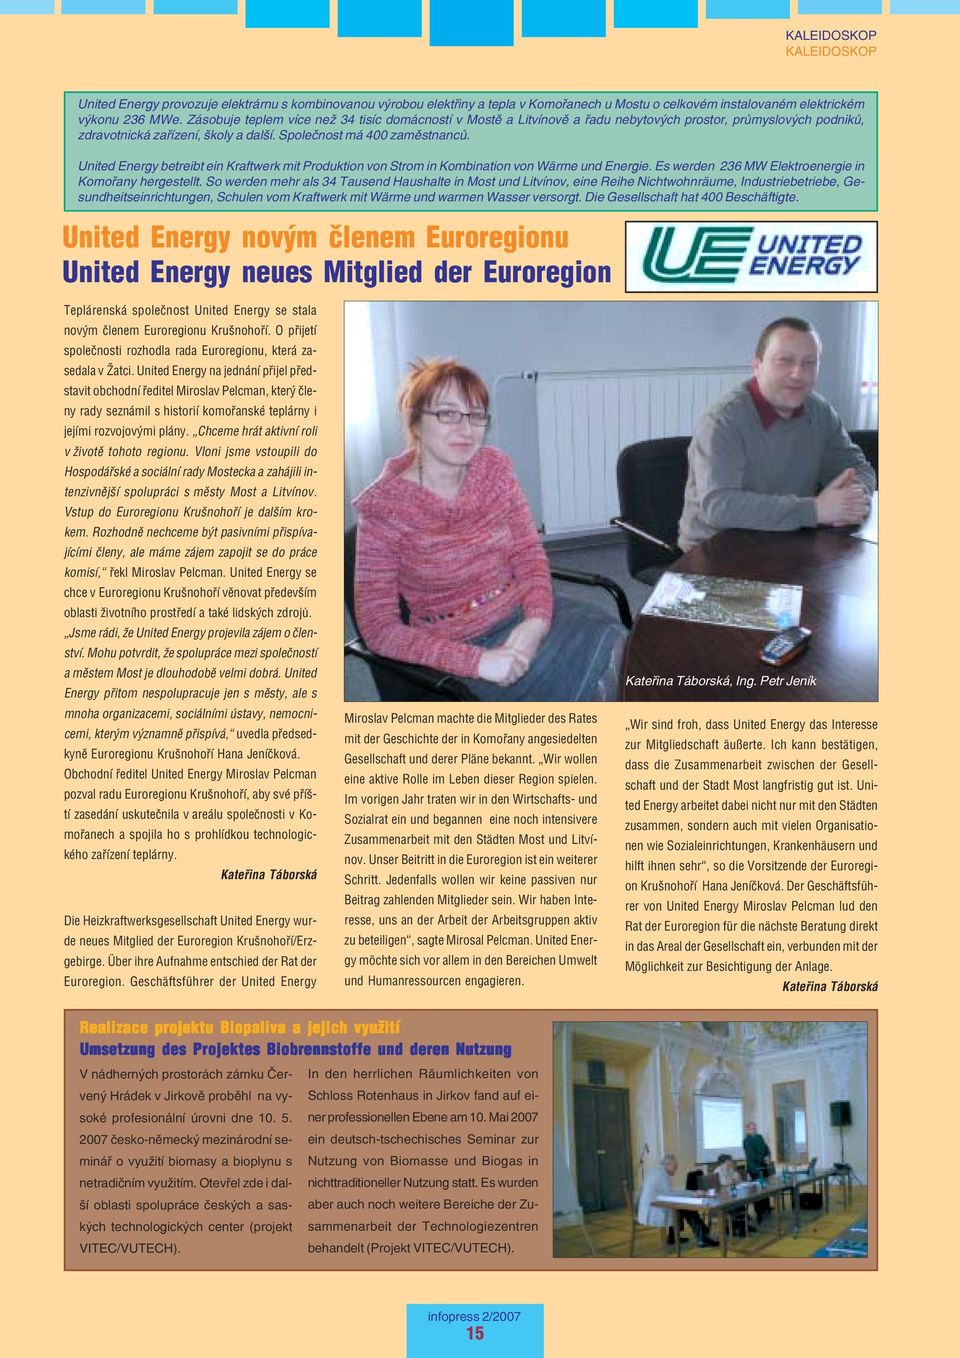 United Energy betreibt ein Kraftwerk mit Produktion von Strom in Kombination von Wärme und Energie. Es werden 236 MW Elektroenergie in Komořany hergestellt.